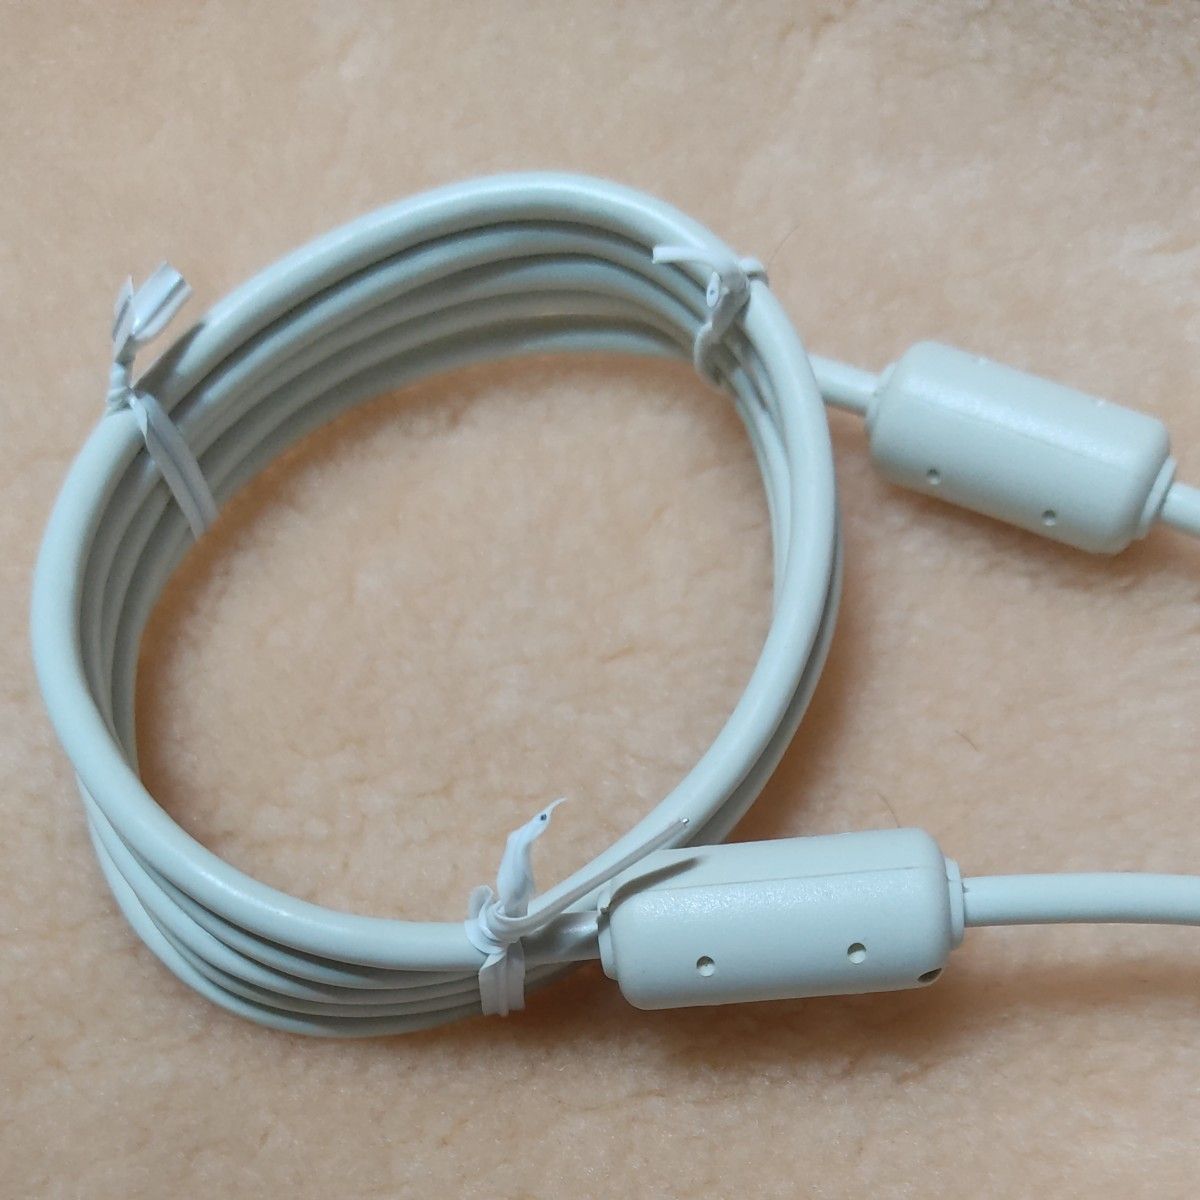 ドコモ ACアダプタ 05 充電器 USB Type-B スマホ NTT docomo 富士通 アダプター 中古品